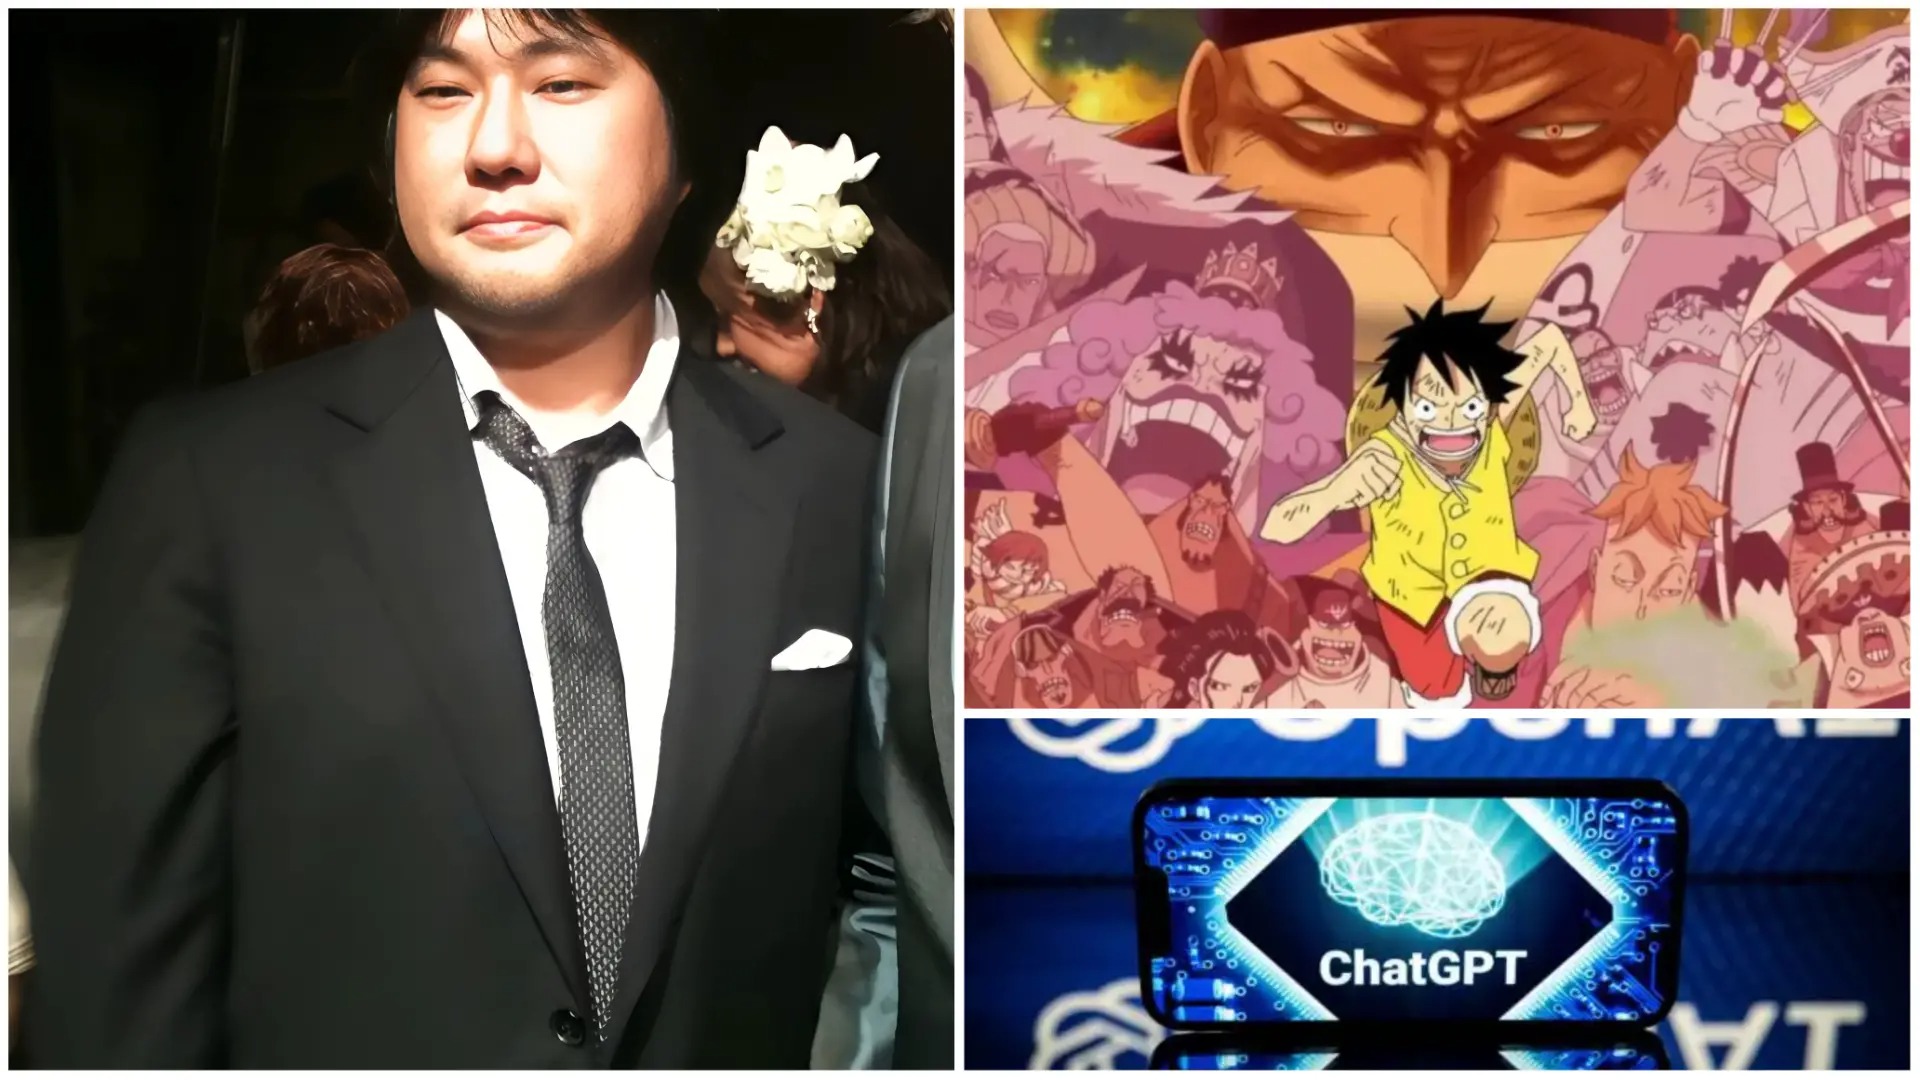 Fantástico publica Fake News sobre próximo arco de One Piece ser feito pelo Chat GPT